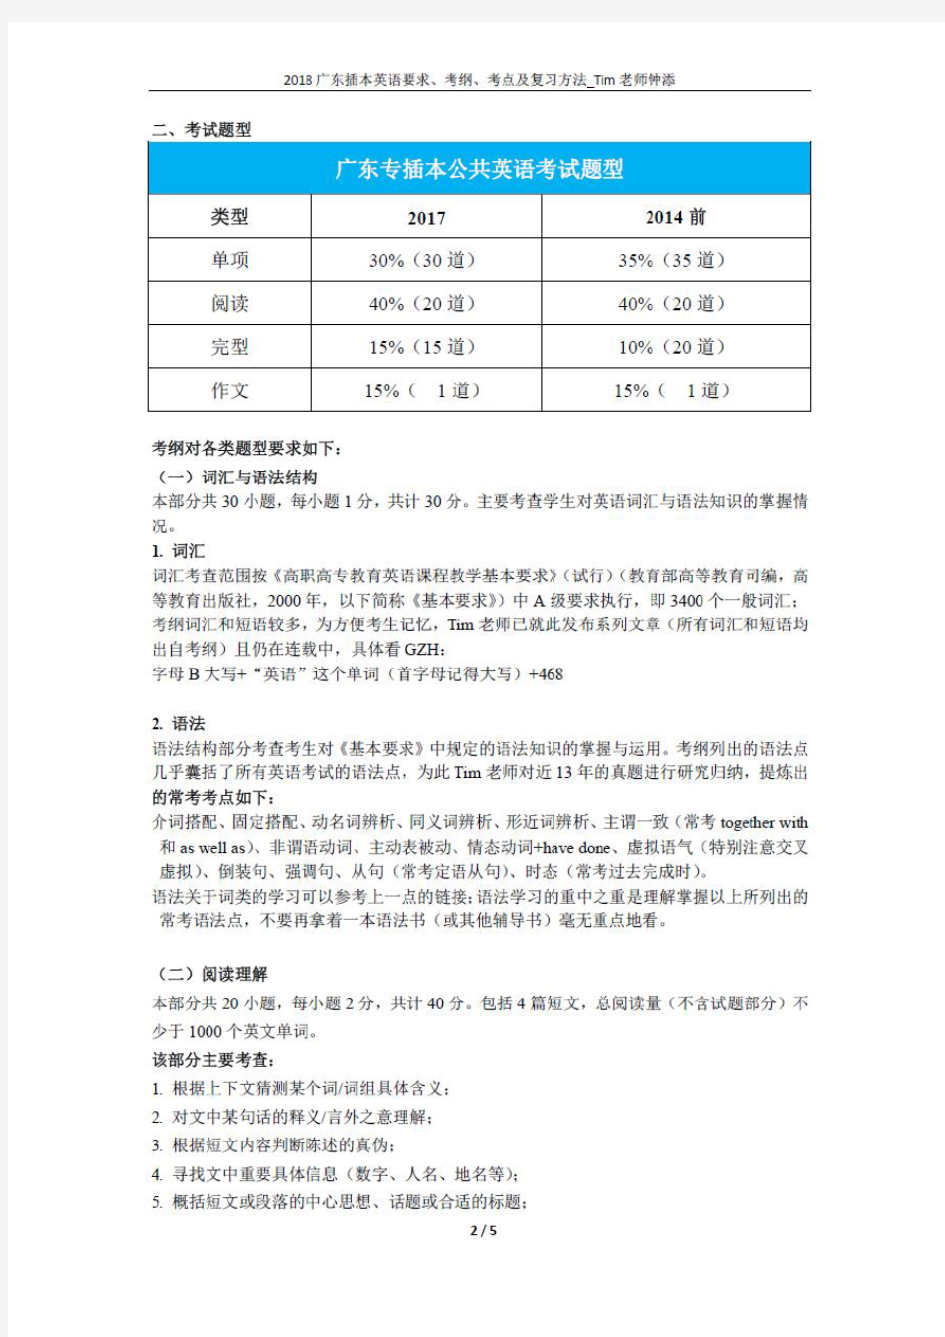 2018 广东专插本英语要求、考纲、考点及复习方法